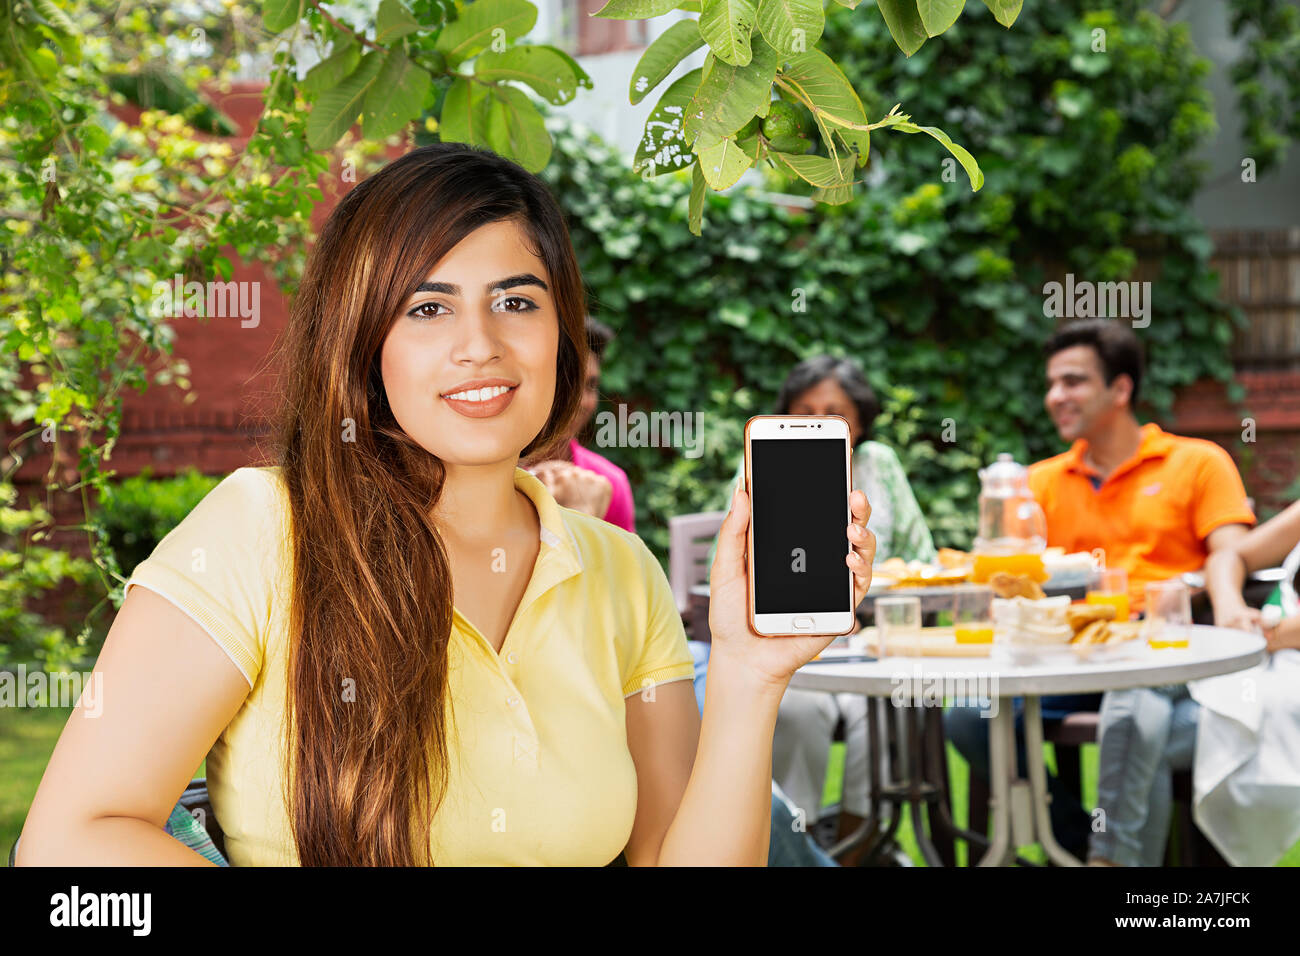 Lächelnd weibliche Mobile-Phone zeigen im Garten zu Hause mit der Familie essen Frühstück im Hintergrund Stockfoto